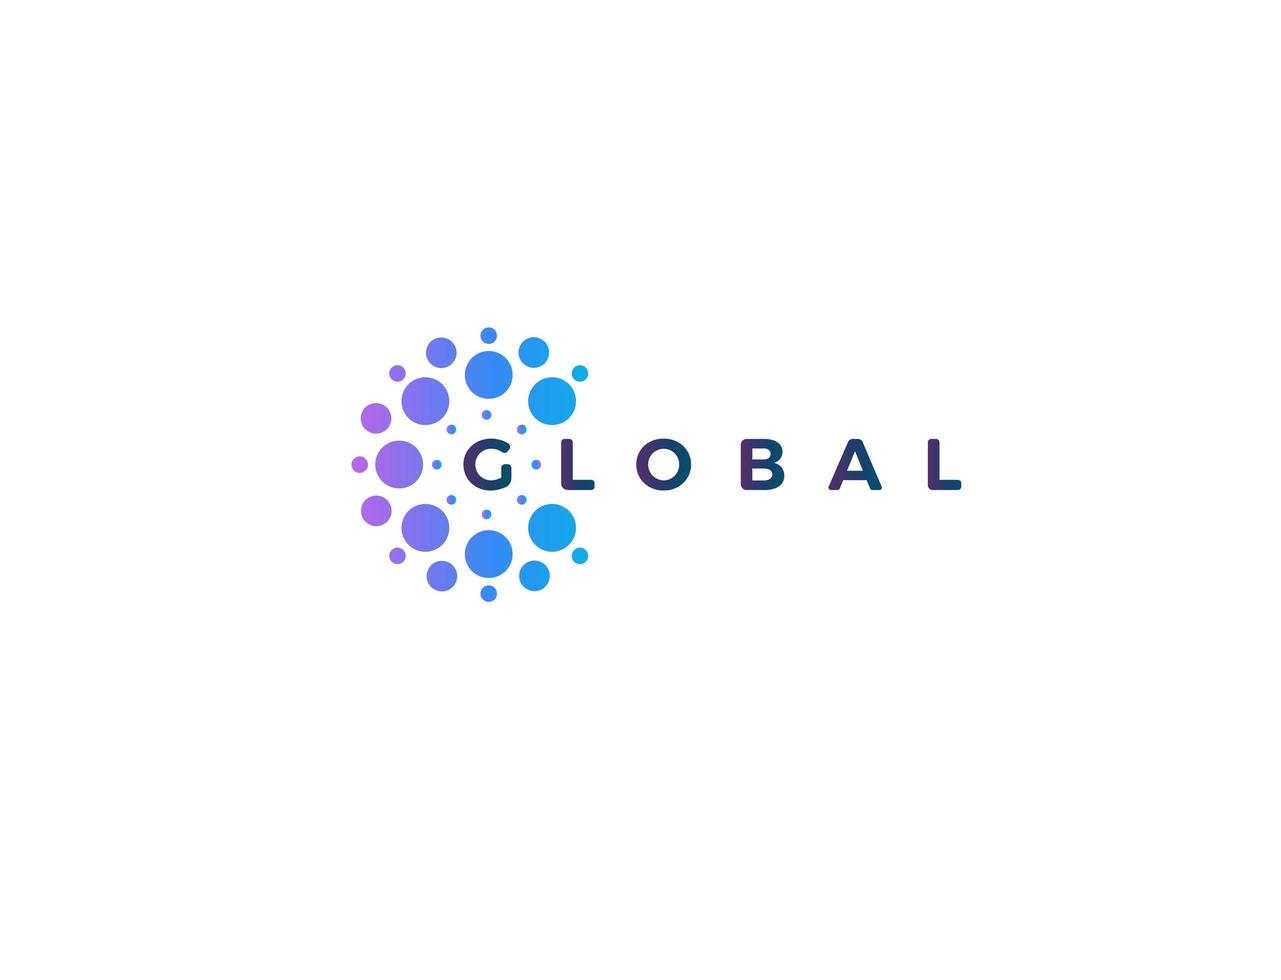 dots logo-koncept för mjukvaruutveckling och global innovativ teknologi. blått och lila runt logotypkoncept för företags- och startidentitet. vektor isolerade logotyp på vit bakgrund